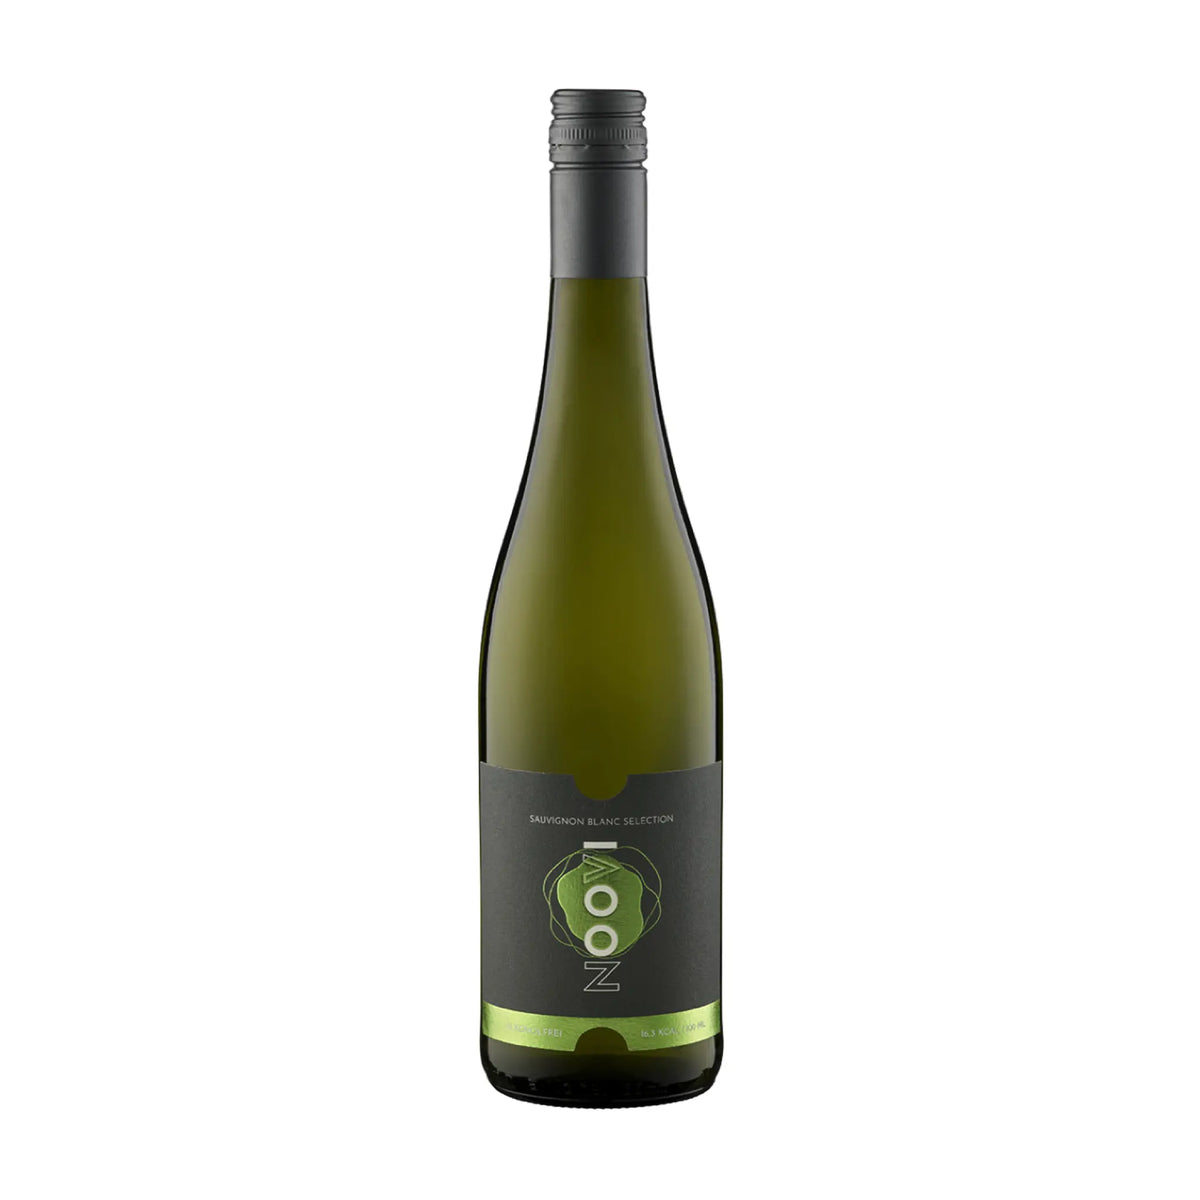 NOOVI-Alkoholfrei-Alkoholfrei-Spanien-Murcia-NOOVI Sauvignon Blanc Selection - alkoholfrei-WINECOM